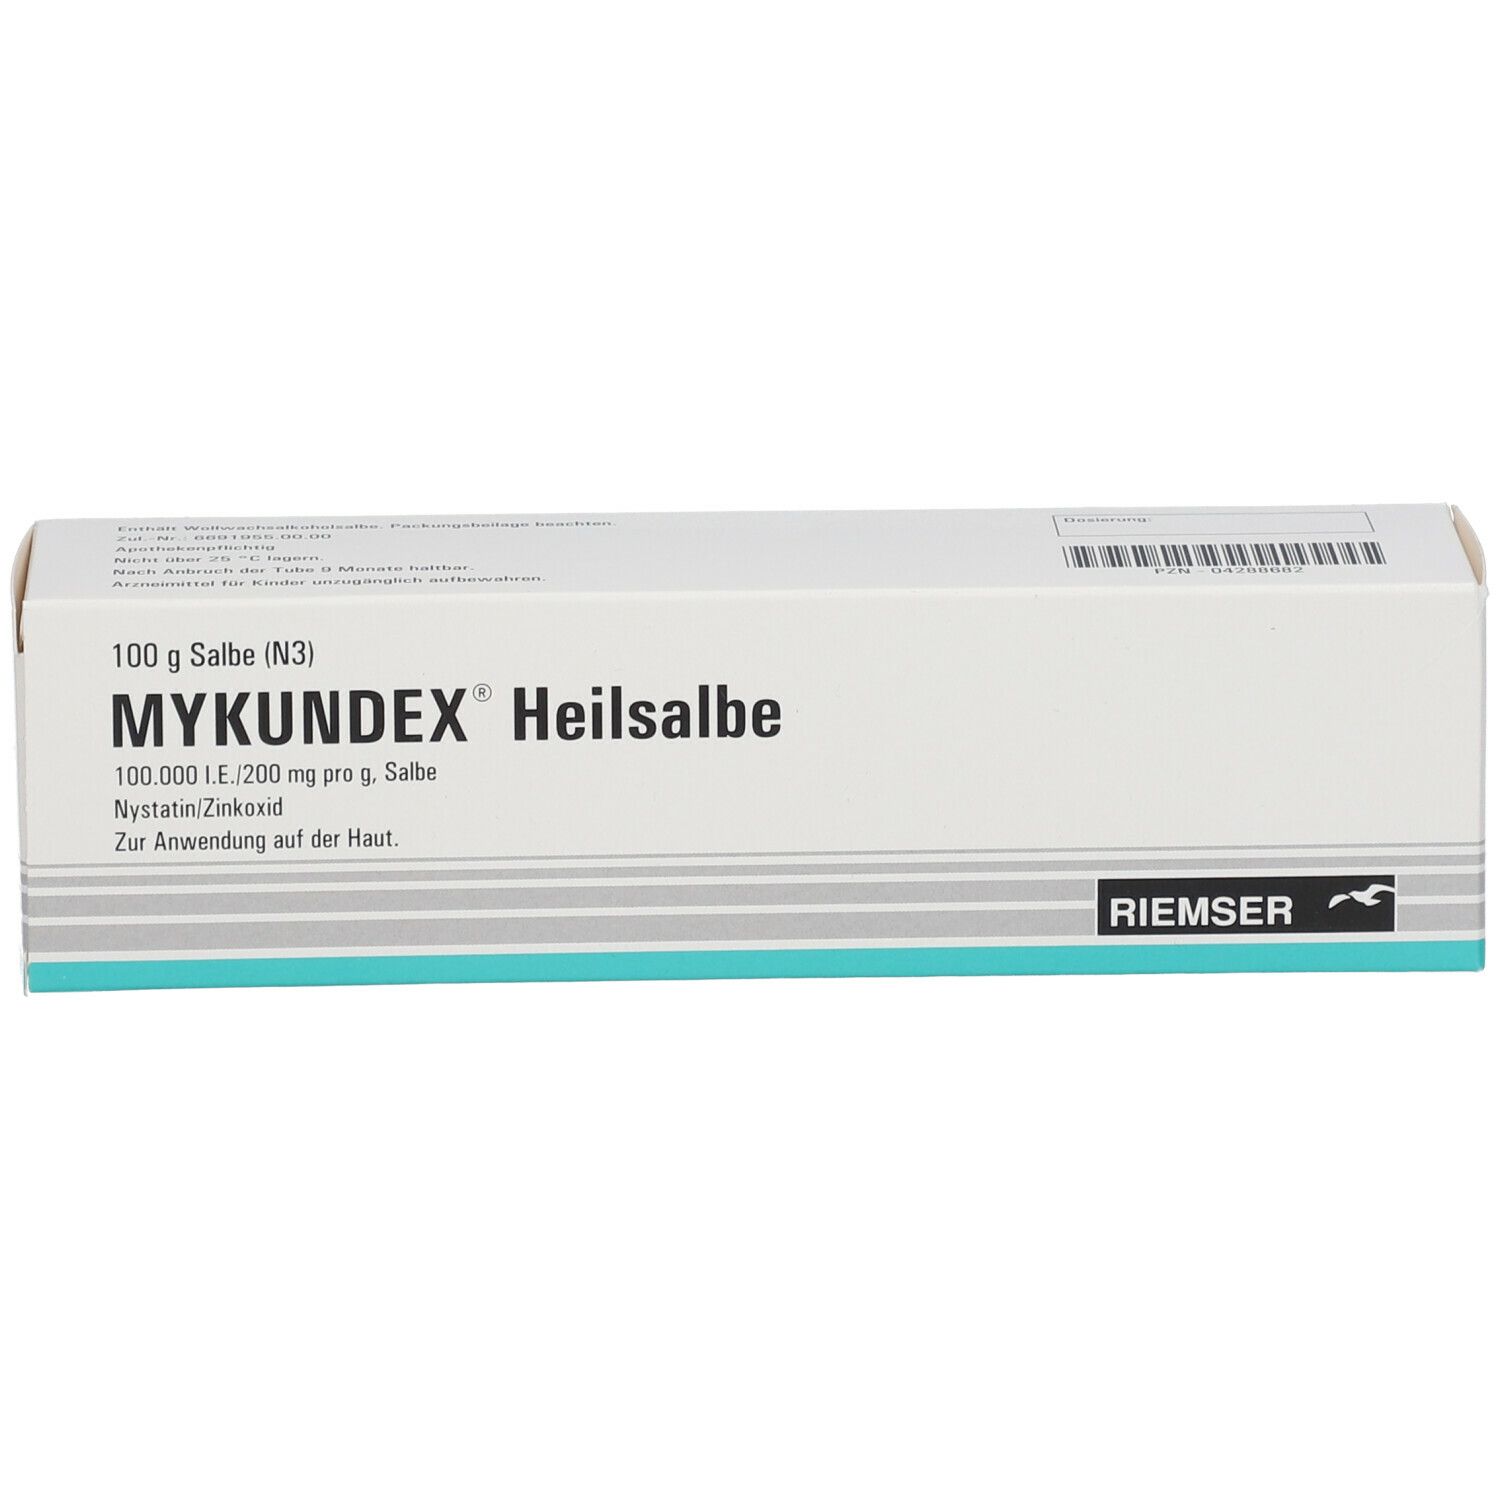 MYKUNDEX® Heilsalbe